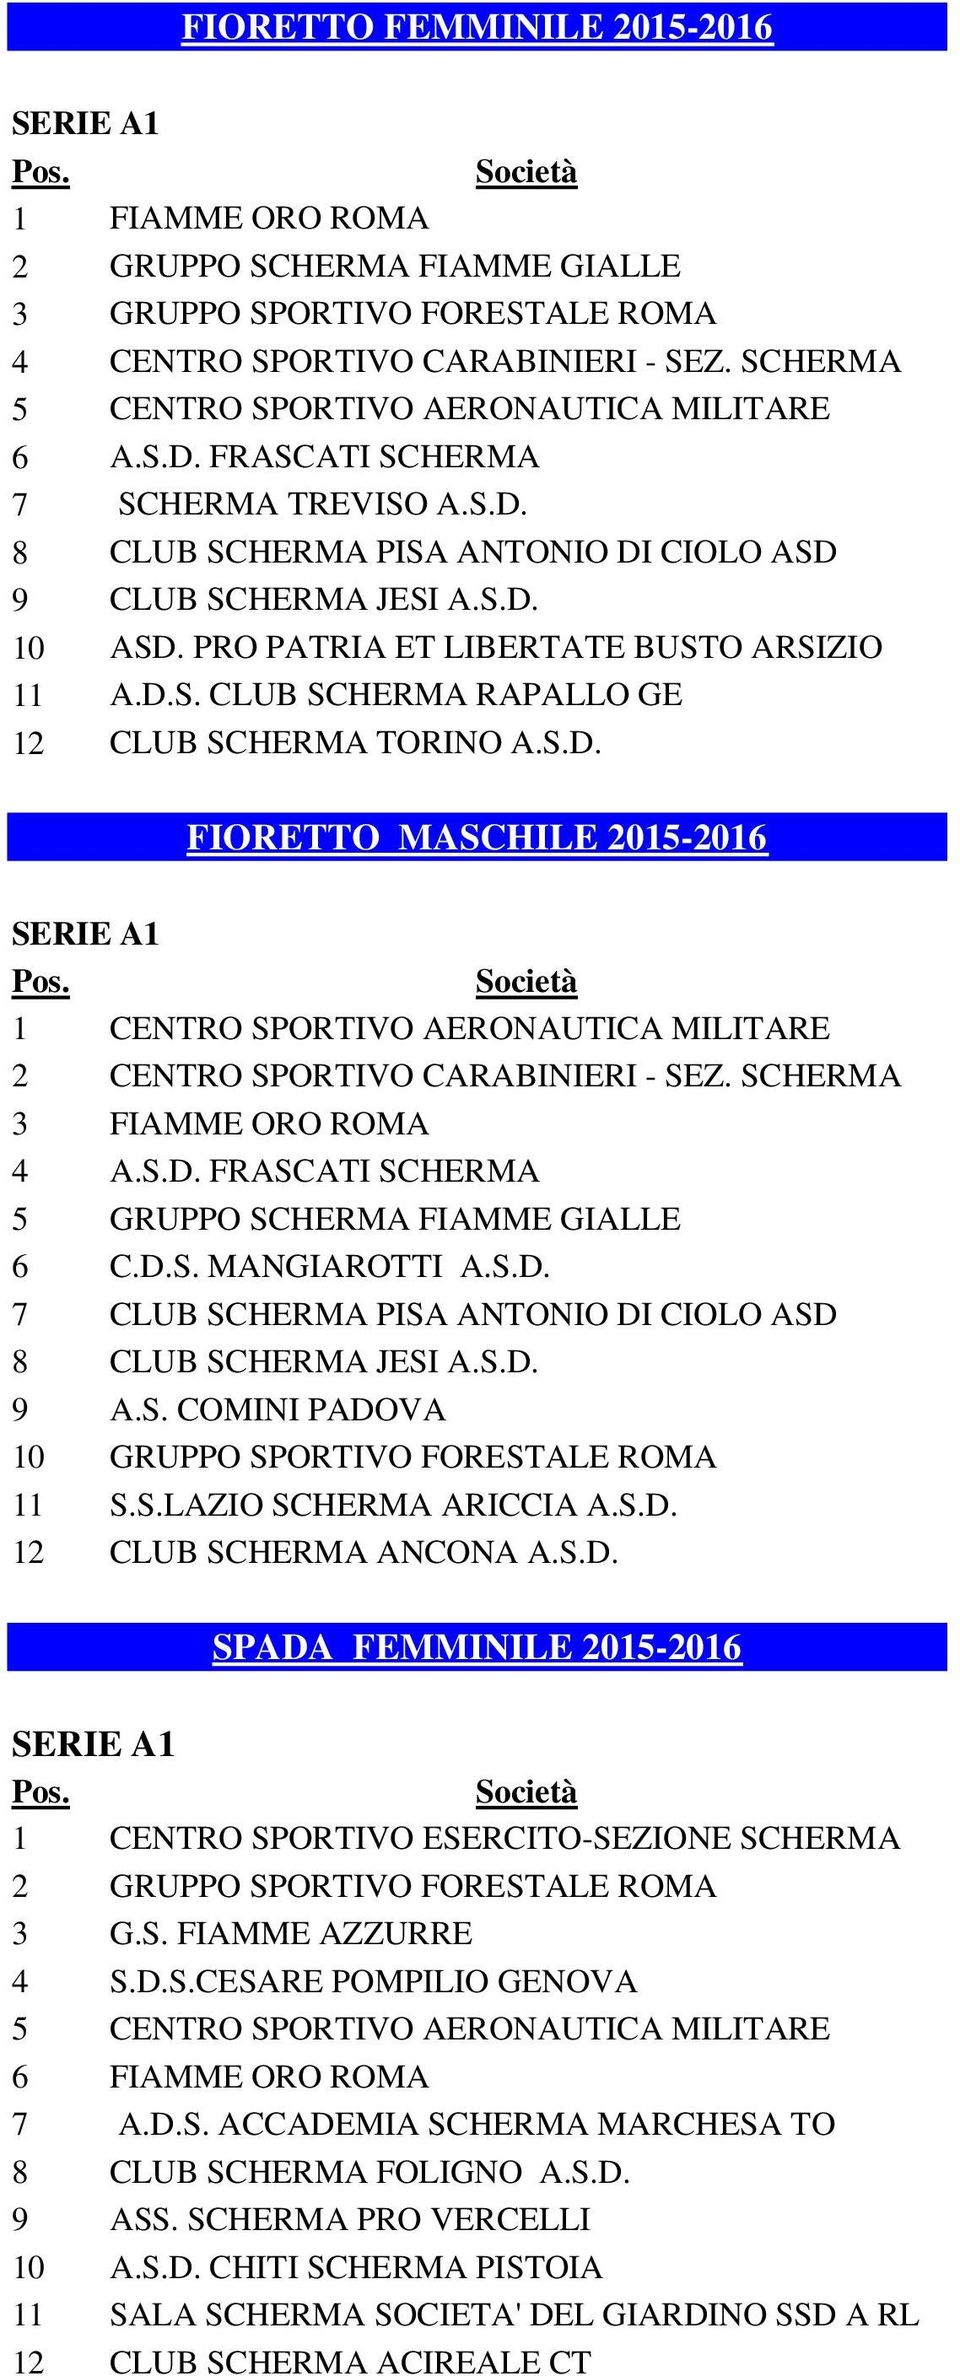 S.D. FIORETTO MASCHILE 2015-2016 1 CENTRO SPORTIVO AERONAUTICA MILITARE 2 CENTRO SPORTIVO CARABINIERI - SEZ. SCHERMA 3 FIAMME ORO ROMA 4 A.S.D. FRASCATI SCHERMA 5 GRUPPO SCHERMA FIAMME GIALLE 6 C.D.S. MANGIAROTTI A.